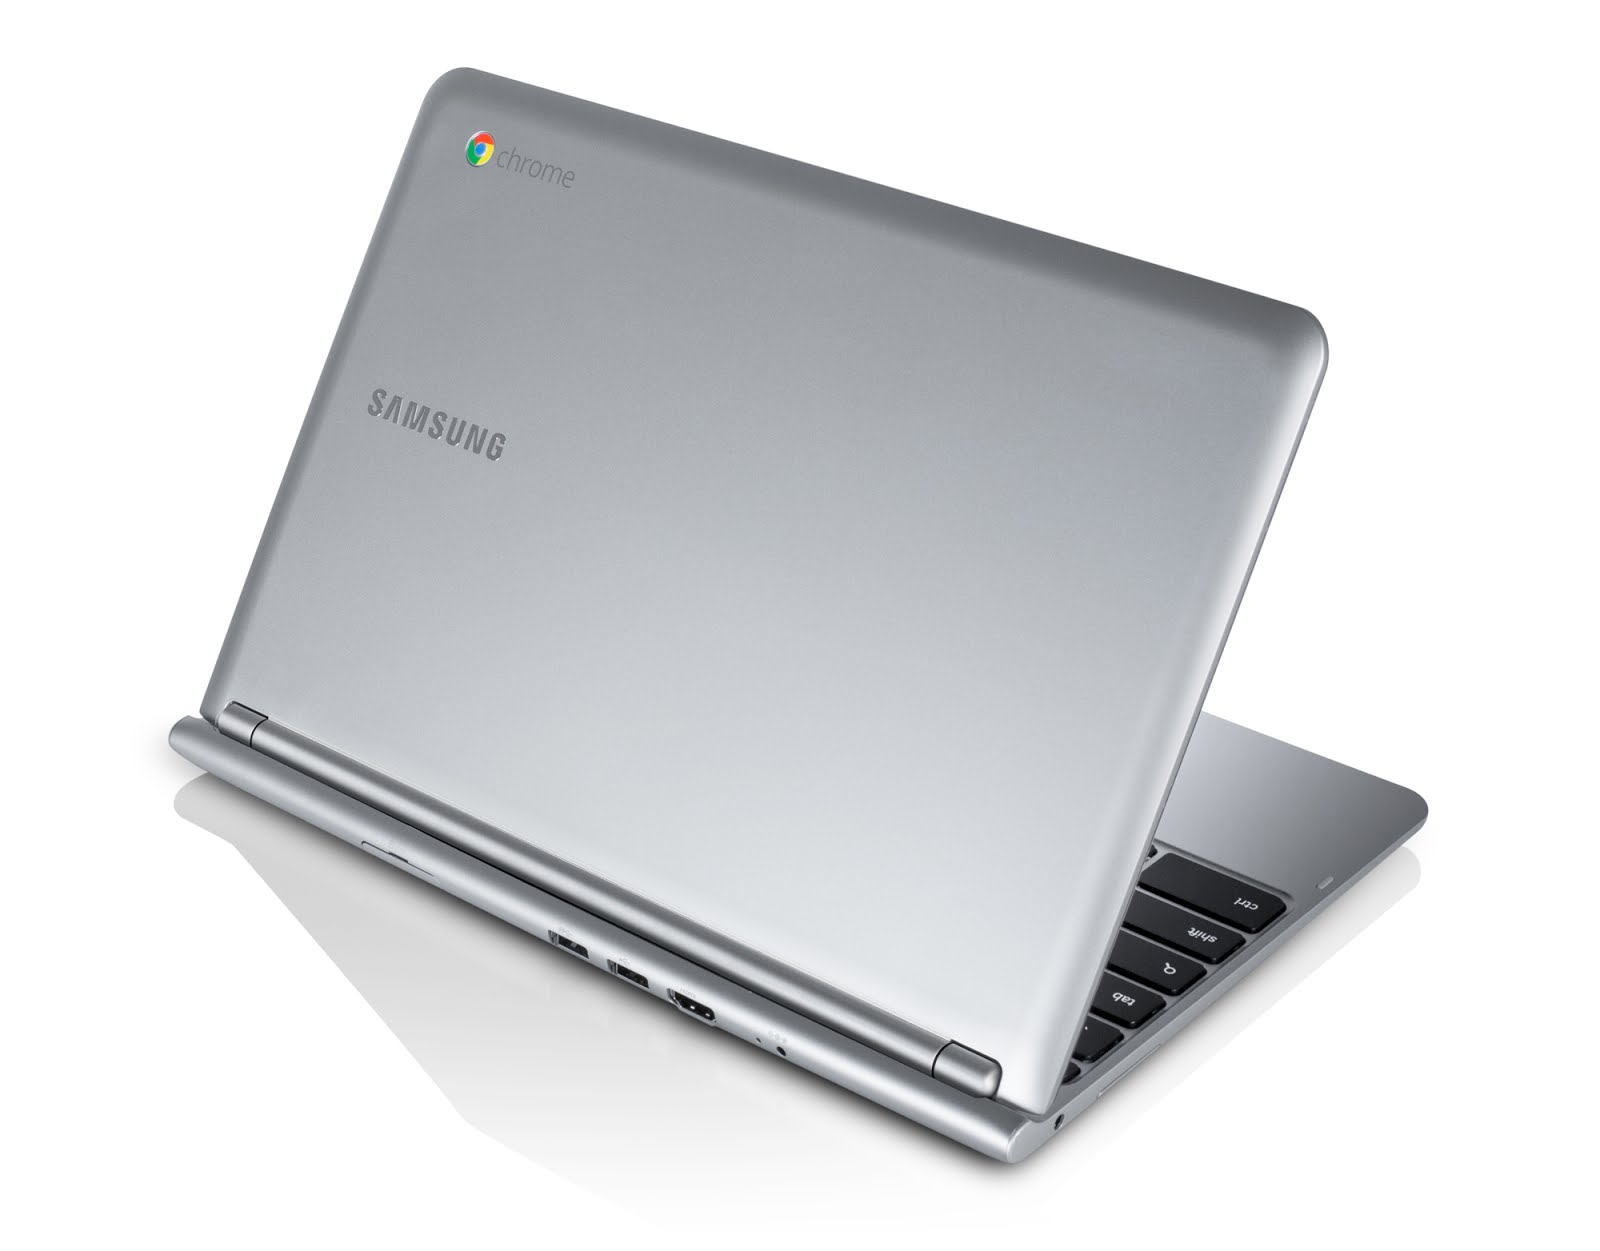 Immagine pubblicata in relazione al seguente contenuto: Google lancia un Chromebook da $249 in collaborazione con Samsung | Nome immagine: news18293_Samsung-Chromebook_1.jpg